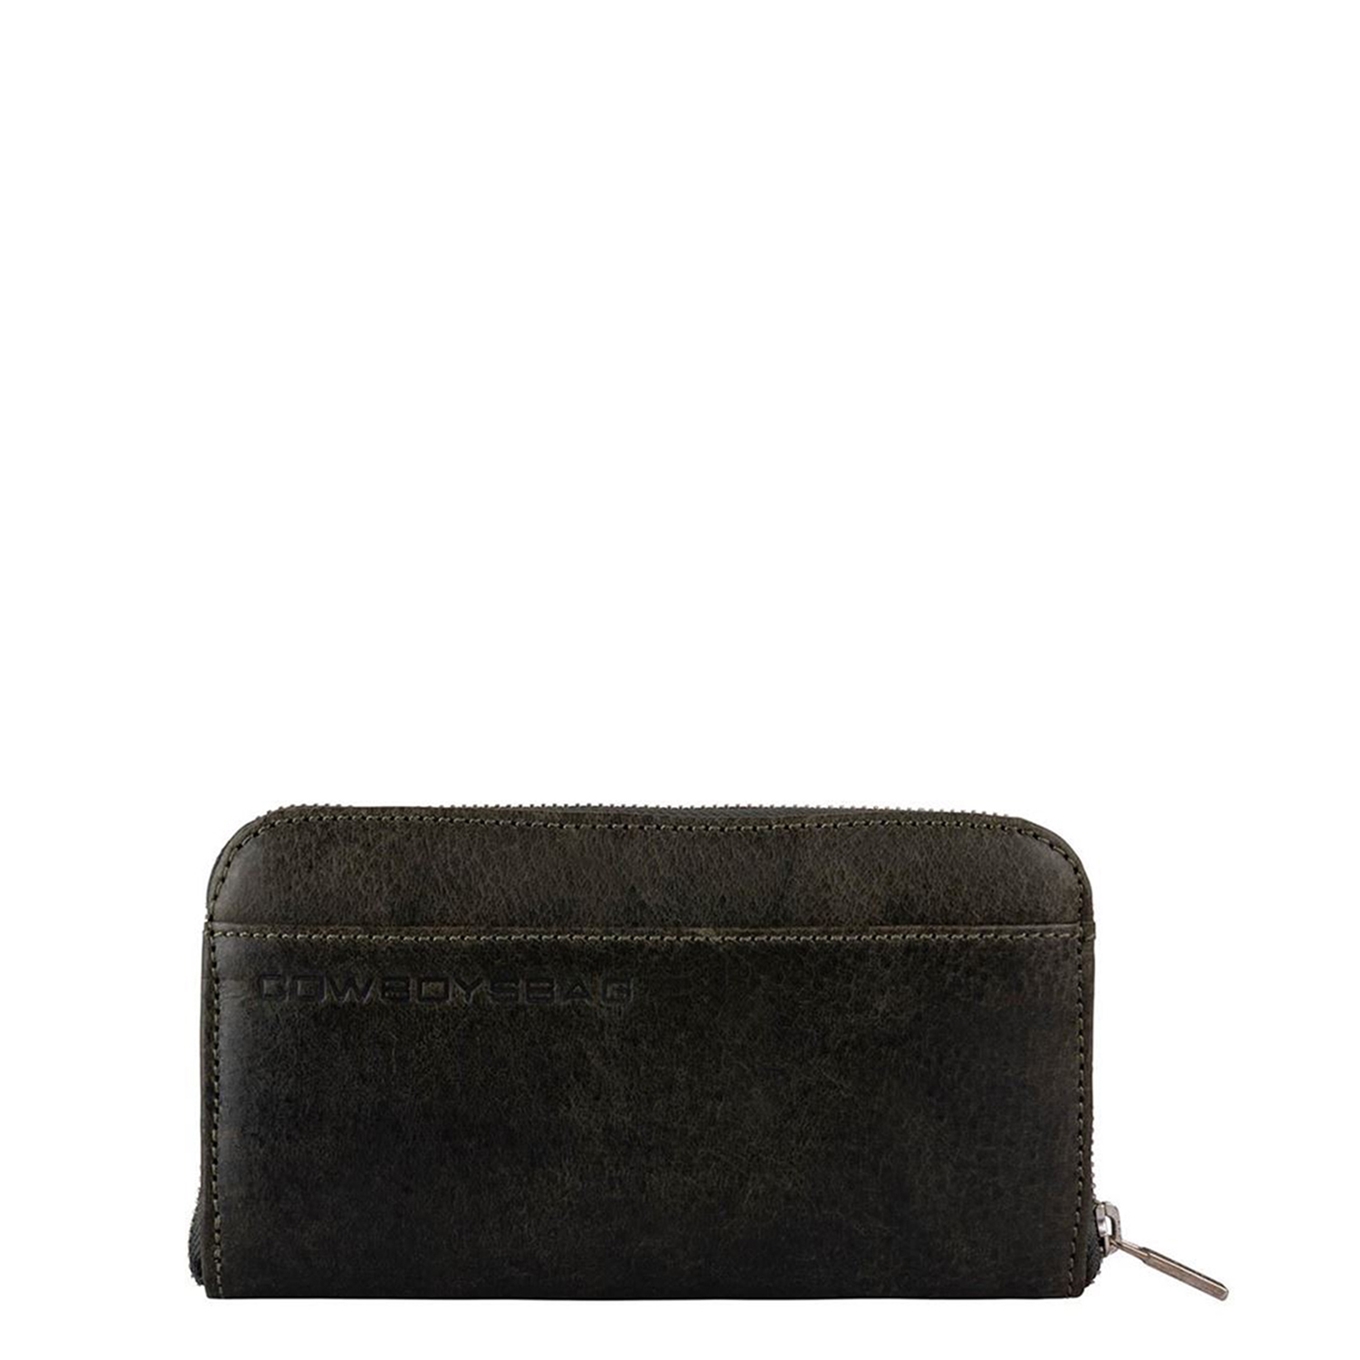 Isolator Bloemlezing bezoek Cowboysbag portemonnee kopen? De nieuwste Cowboysbag collectie staat nu  online! | Travelbags.nl